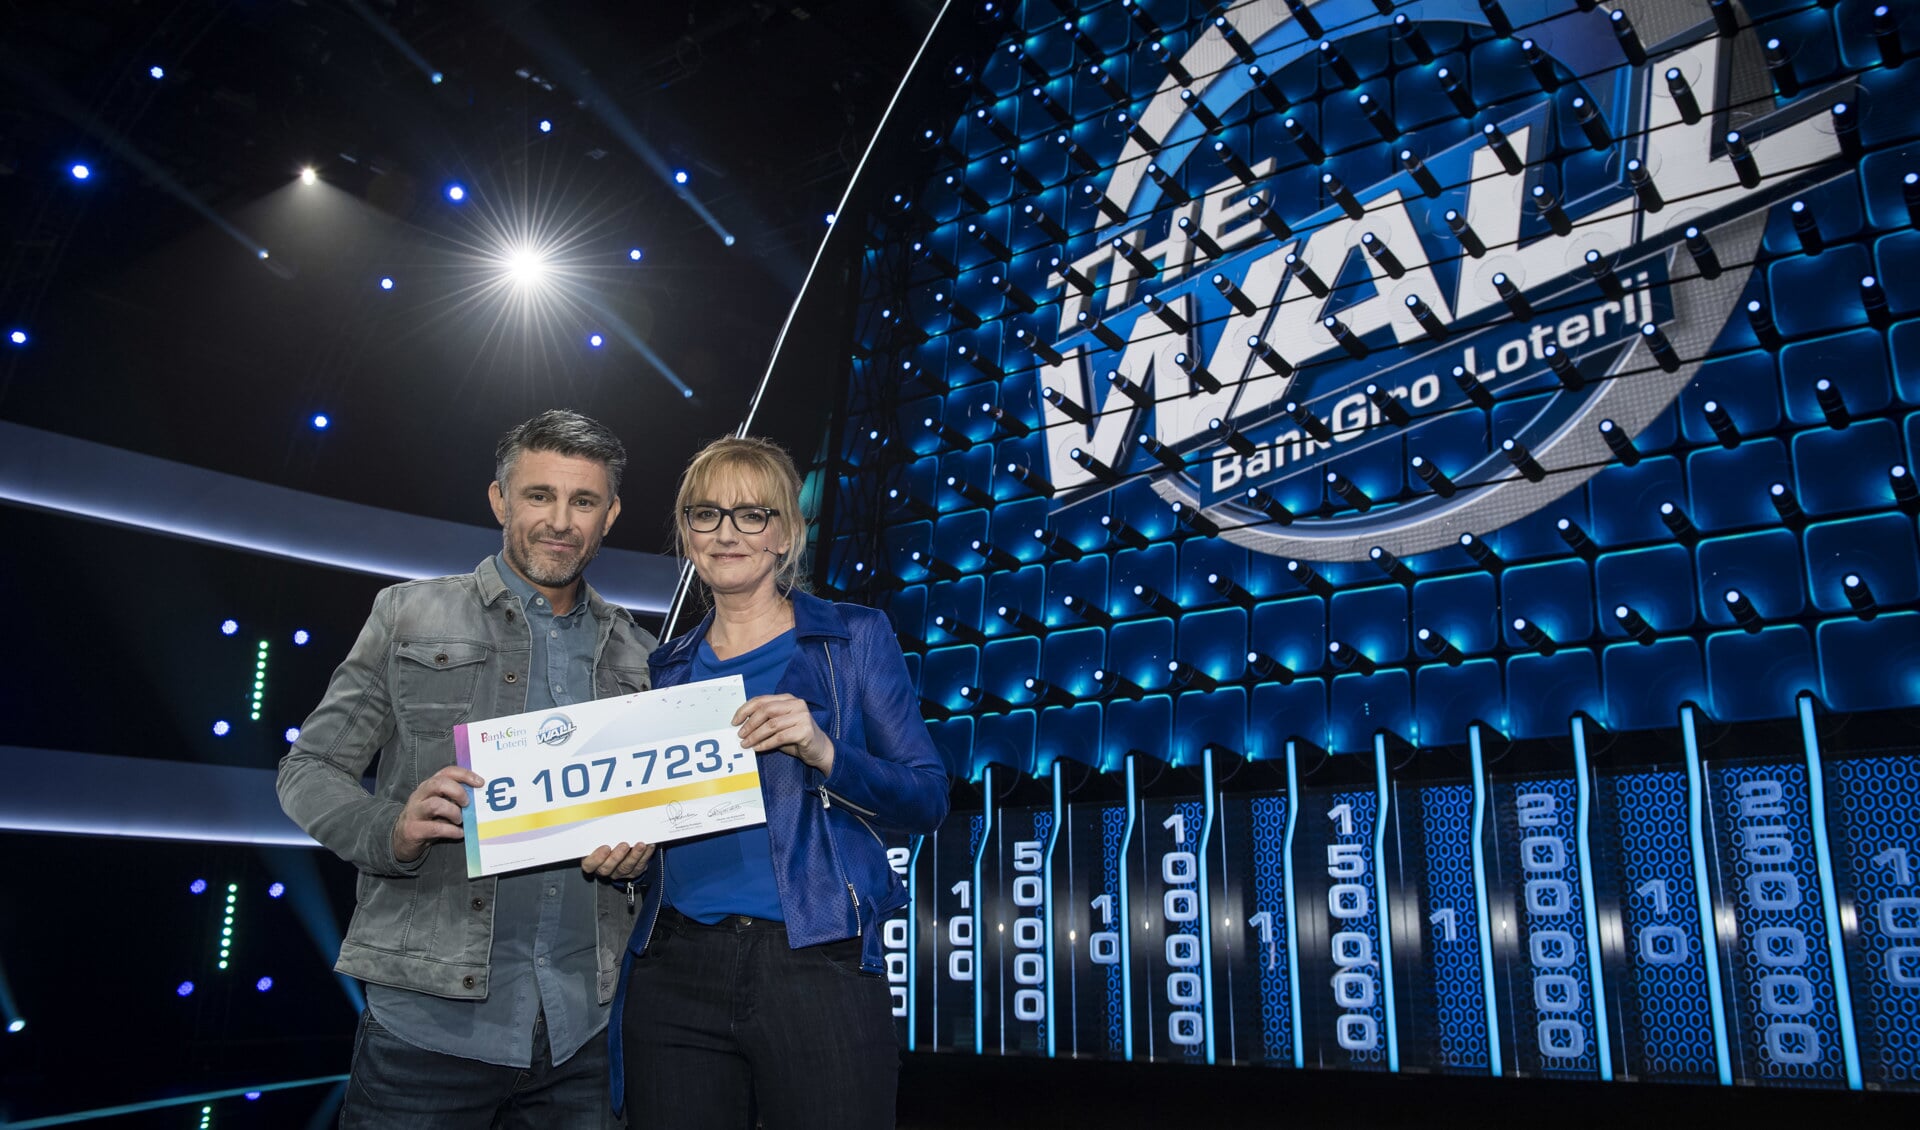 ‘BankGiro Loterij The Wall'-kandidaten Tanja en Marc ontvangen de cheque van 107.723 euro. | Foto Jurgen Jacob Lodder.